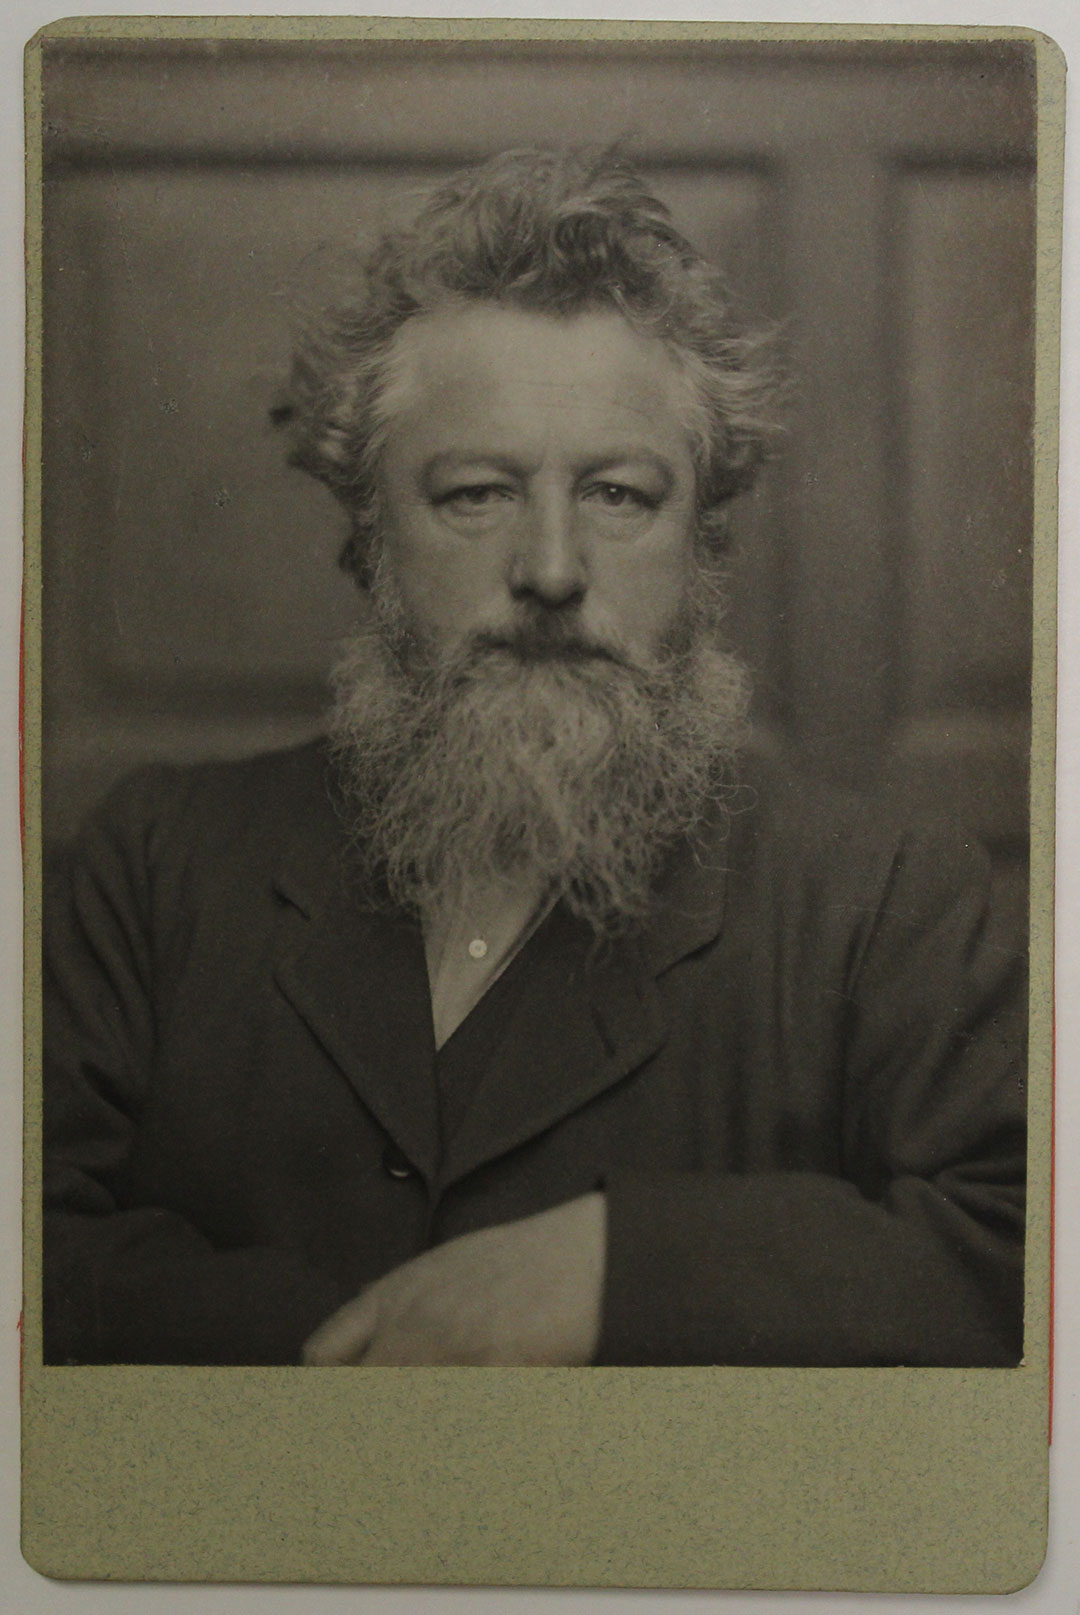 British designer William Morris